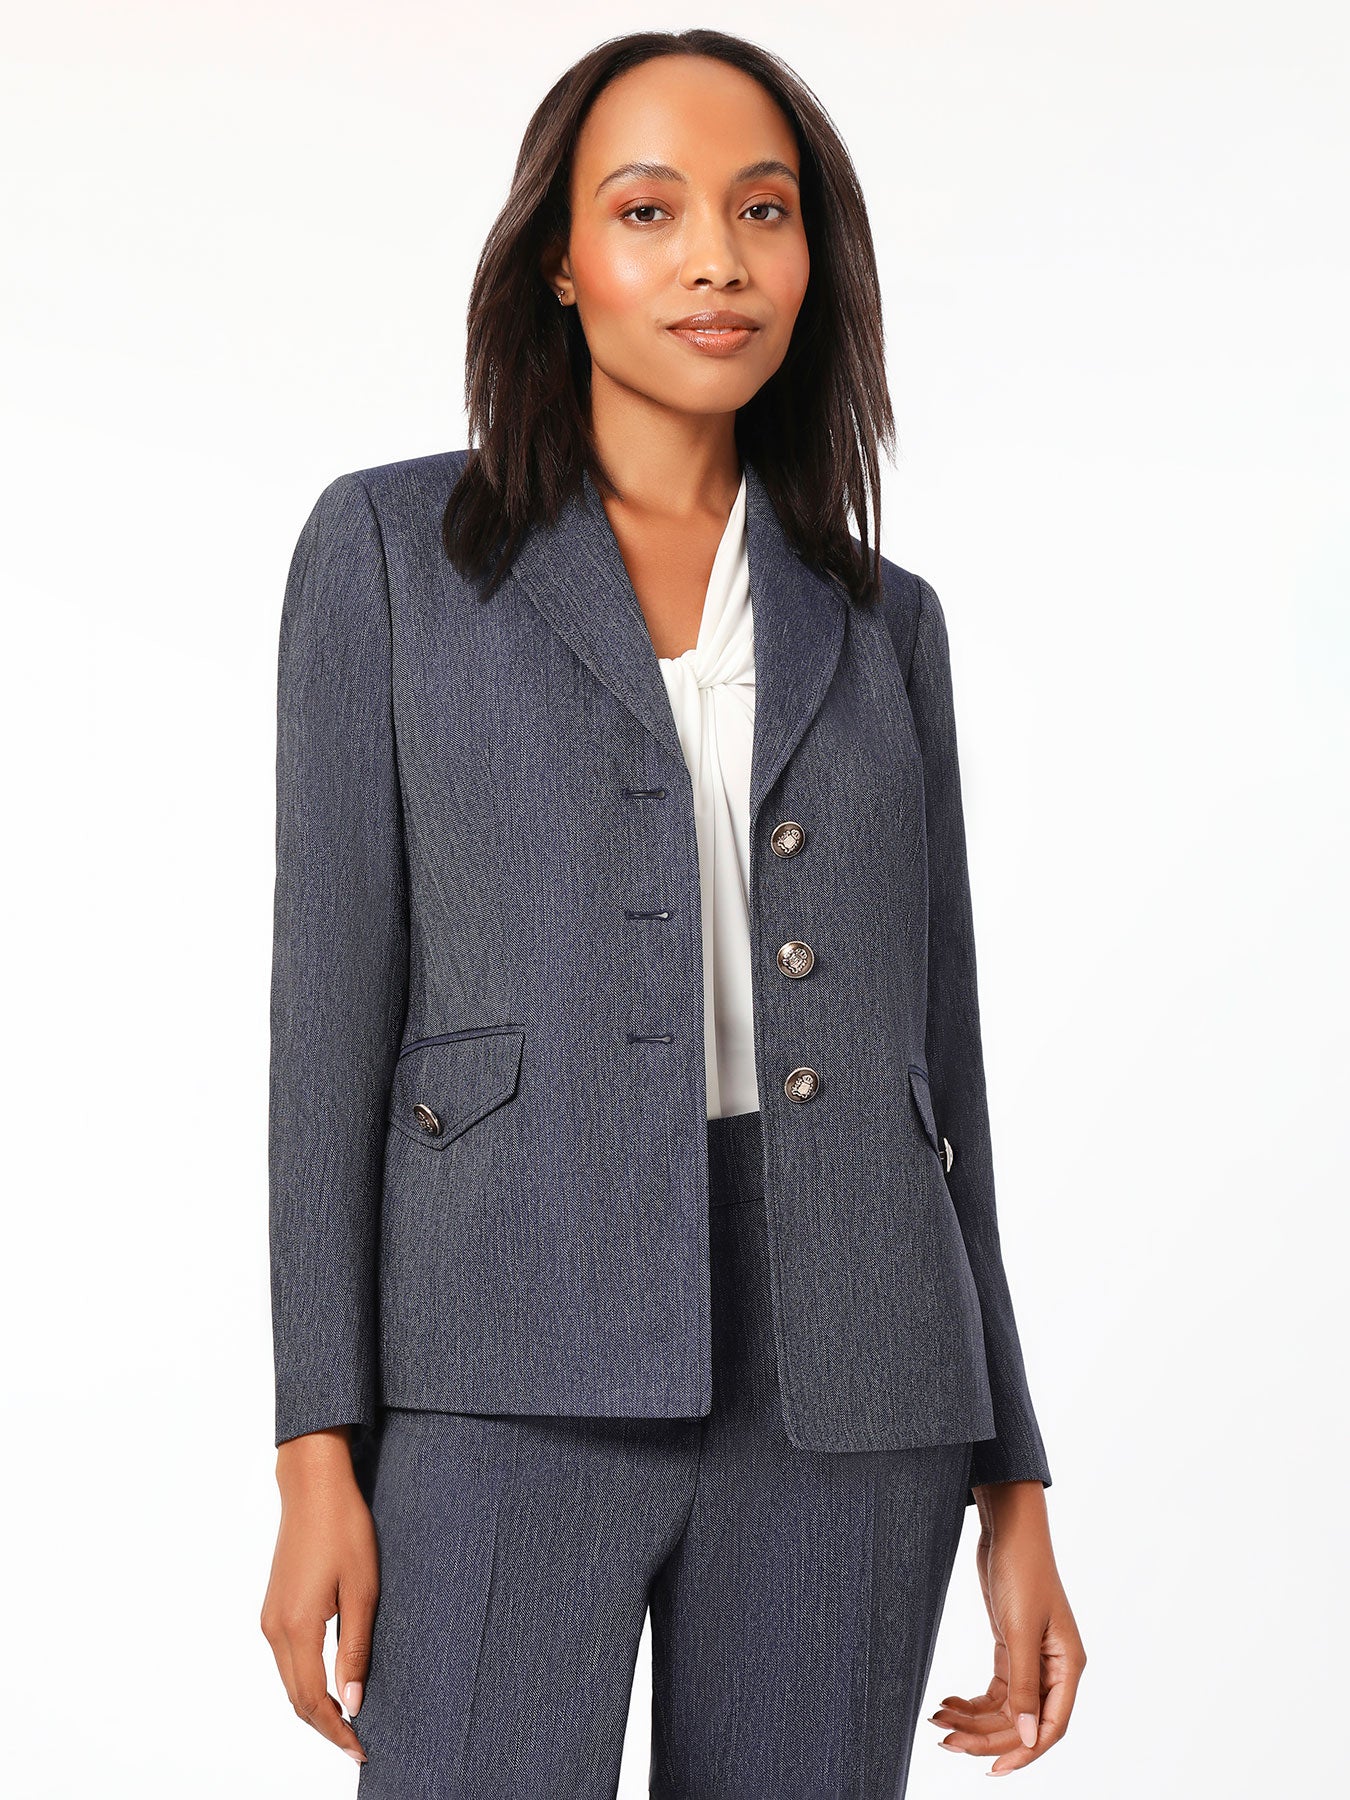 Women's Blazers - Business Casual Jacket | Kasper